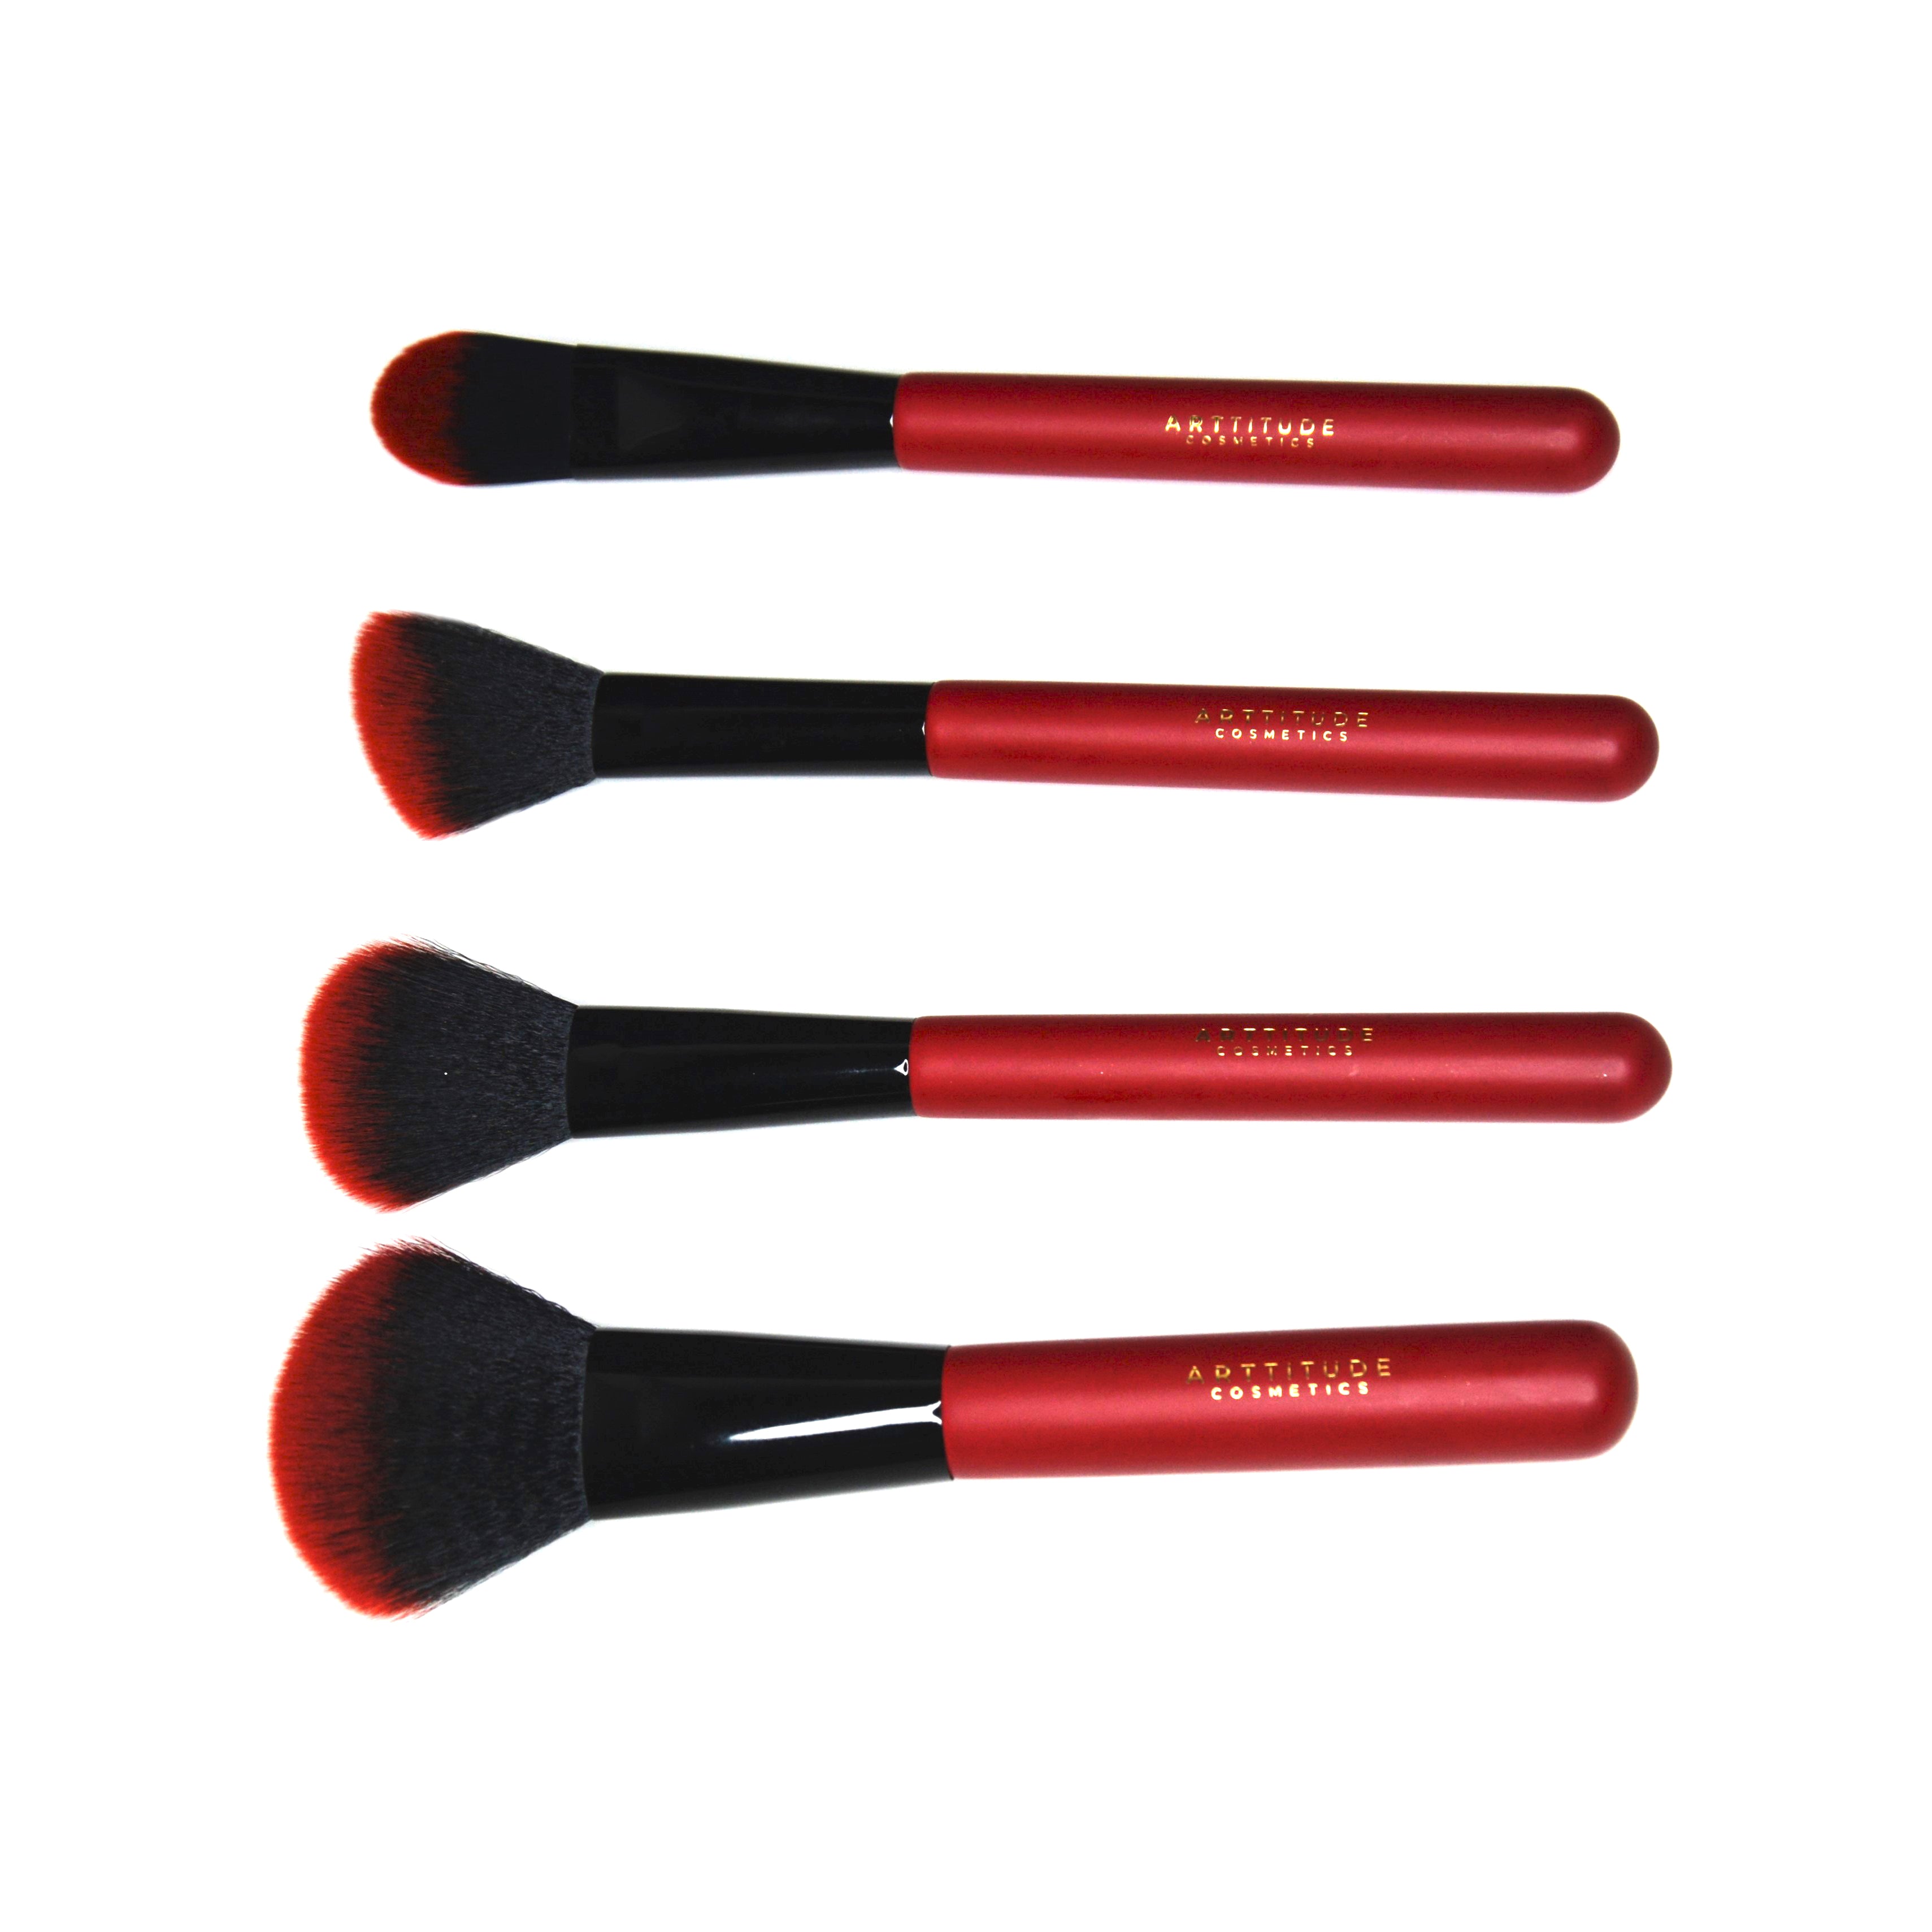 Red and Black Make-Up Brush Set - 4 Piece Face Finishing Brushes